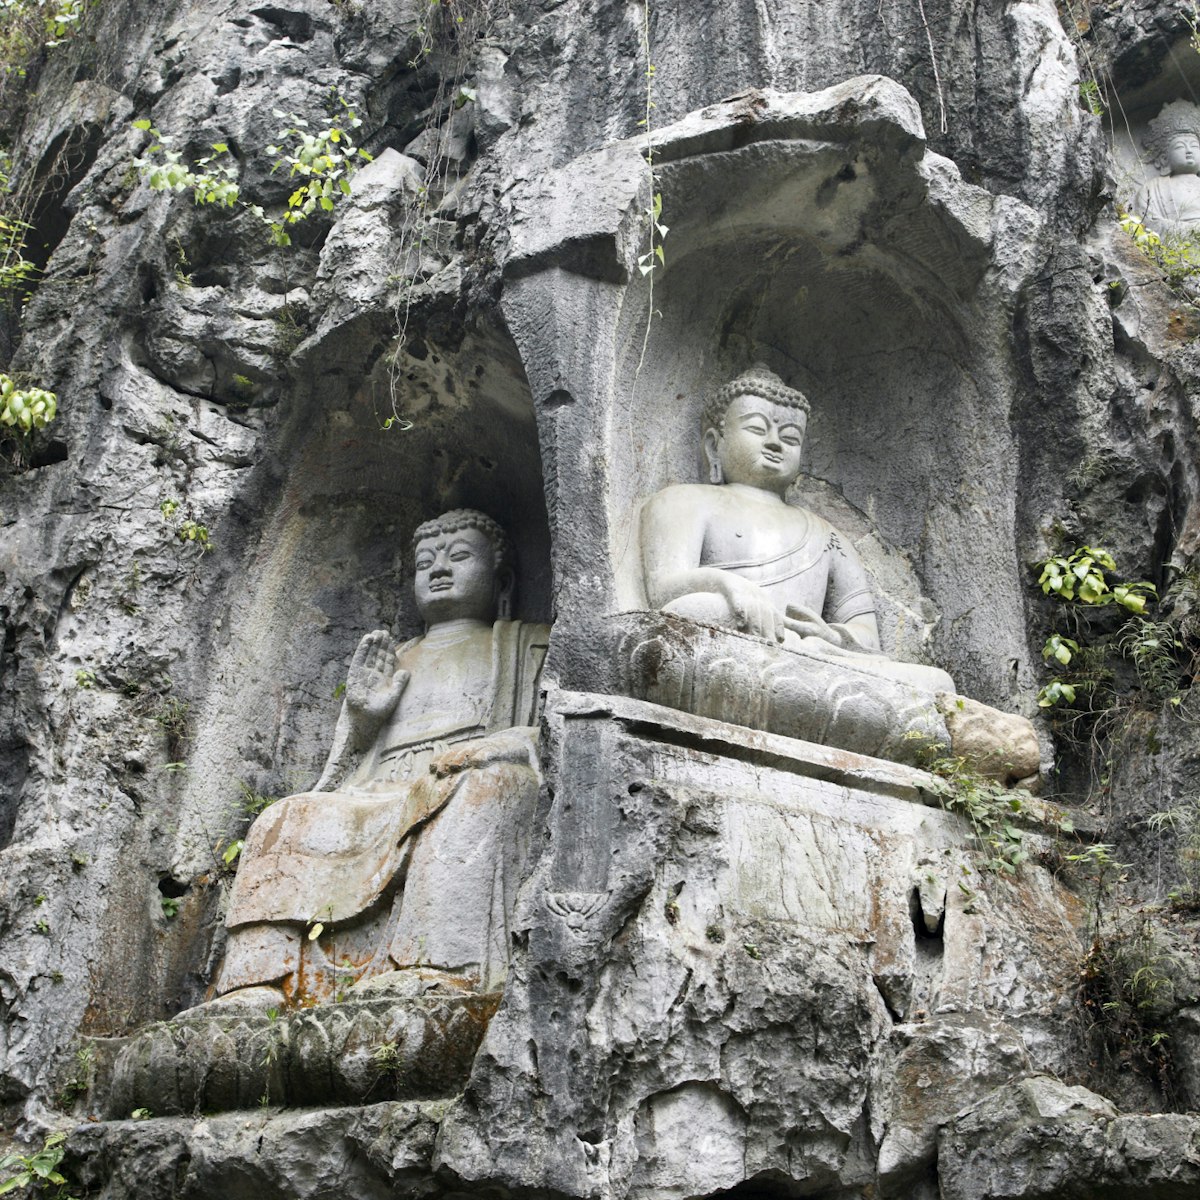 China, Zhejiang province, Hangzhou, Lingyin temple, statues of Buddha